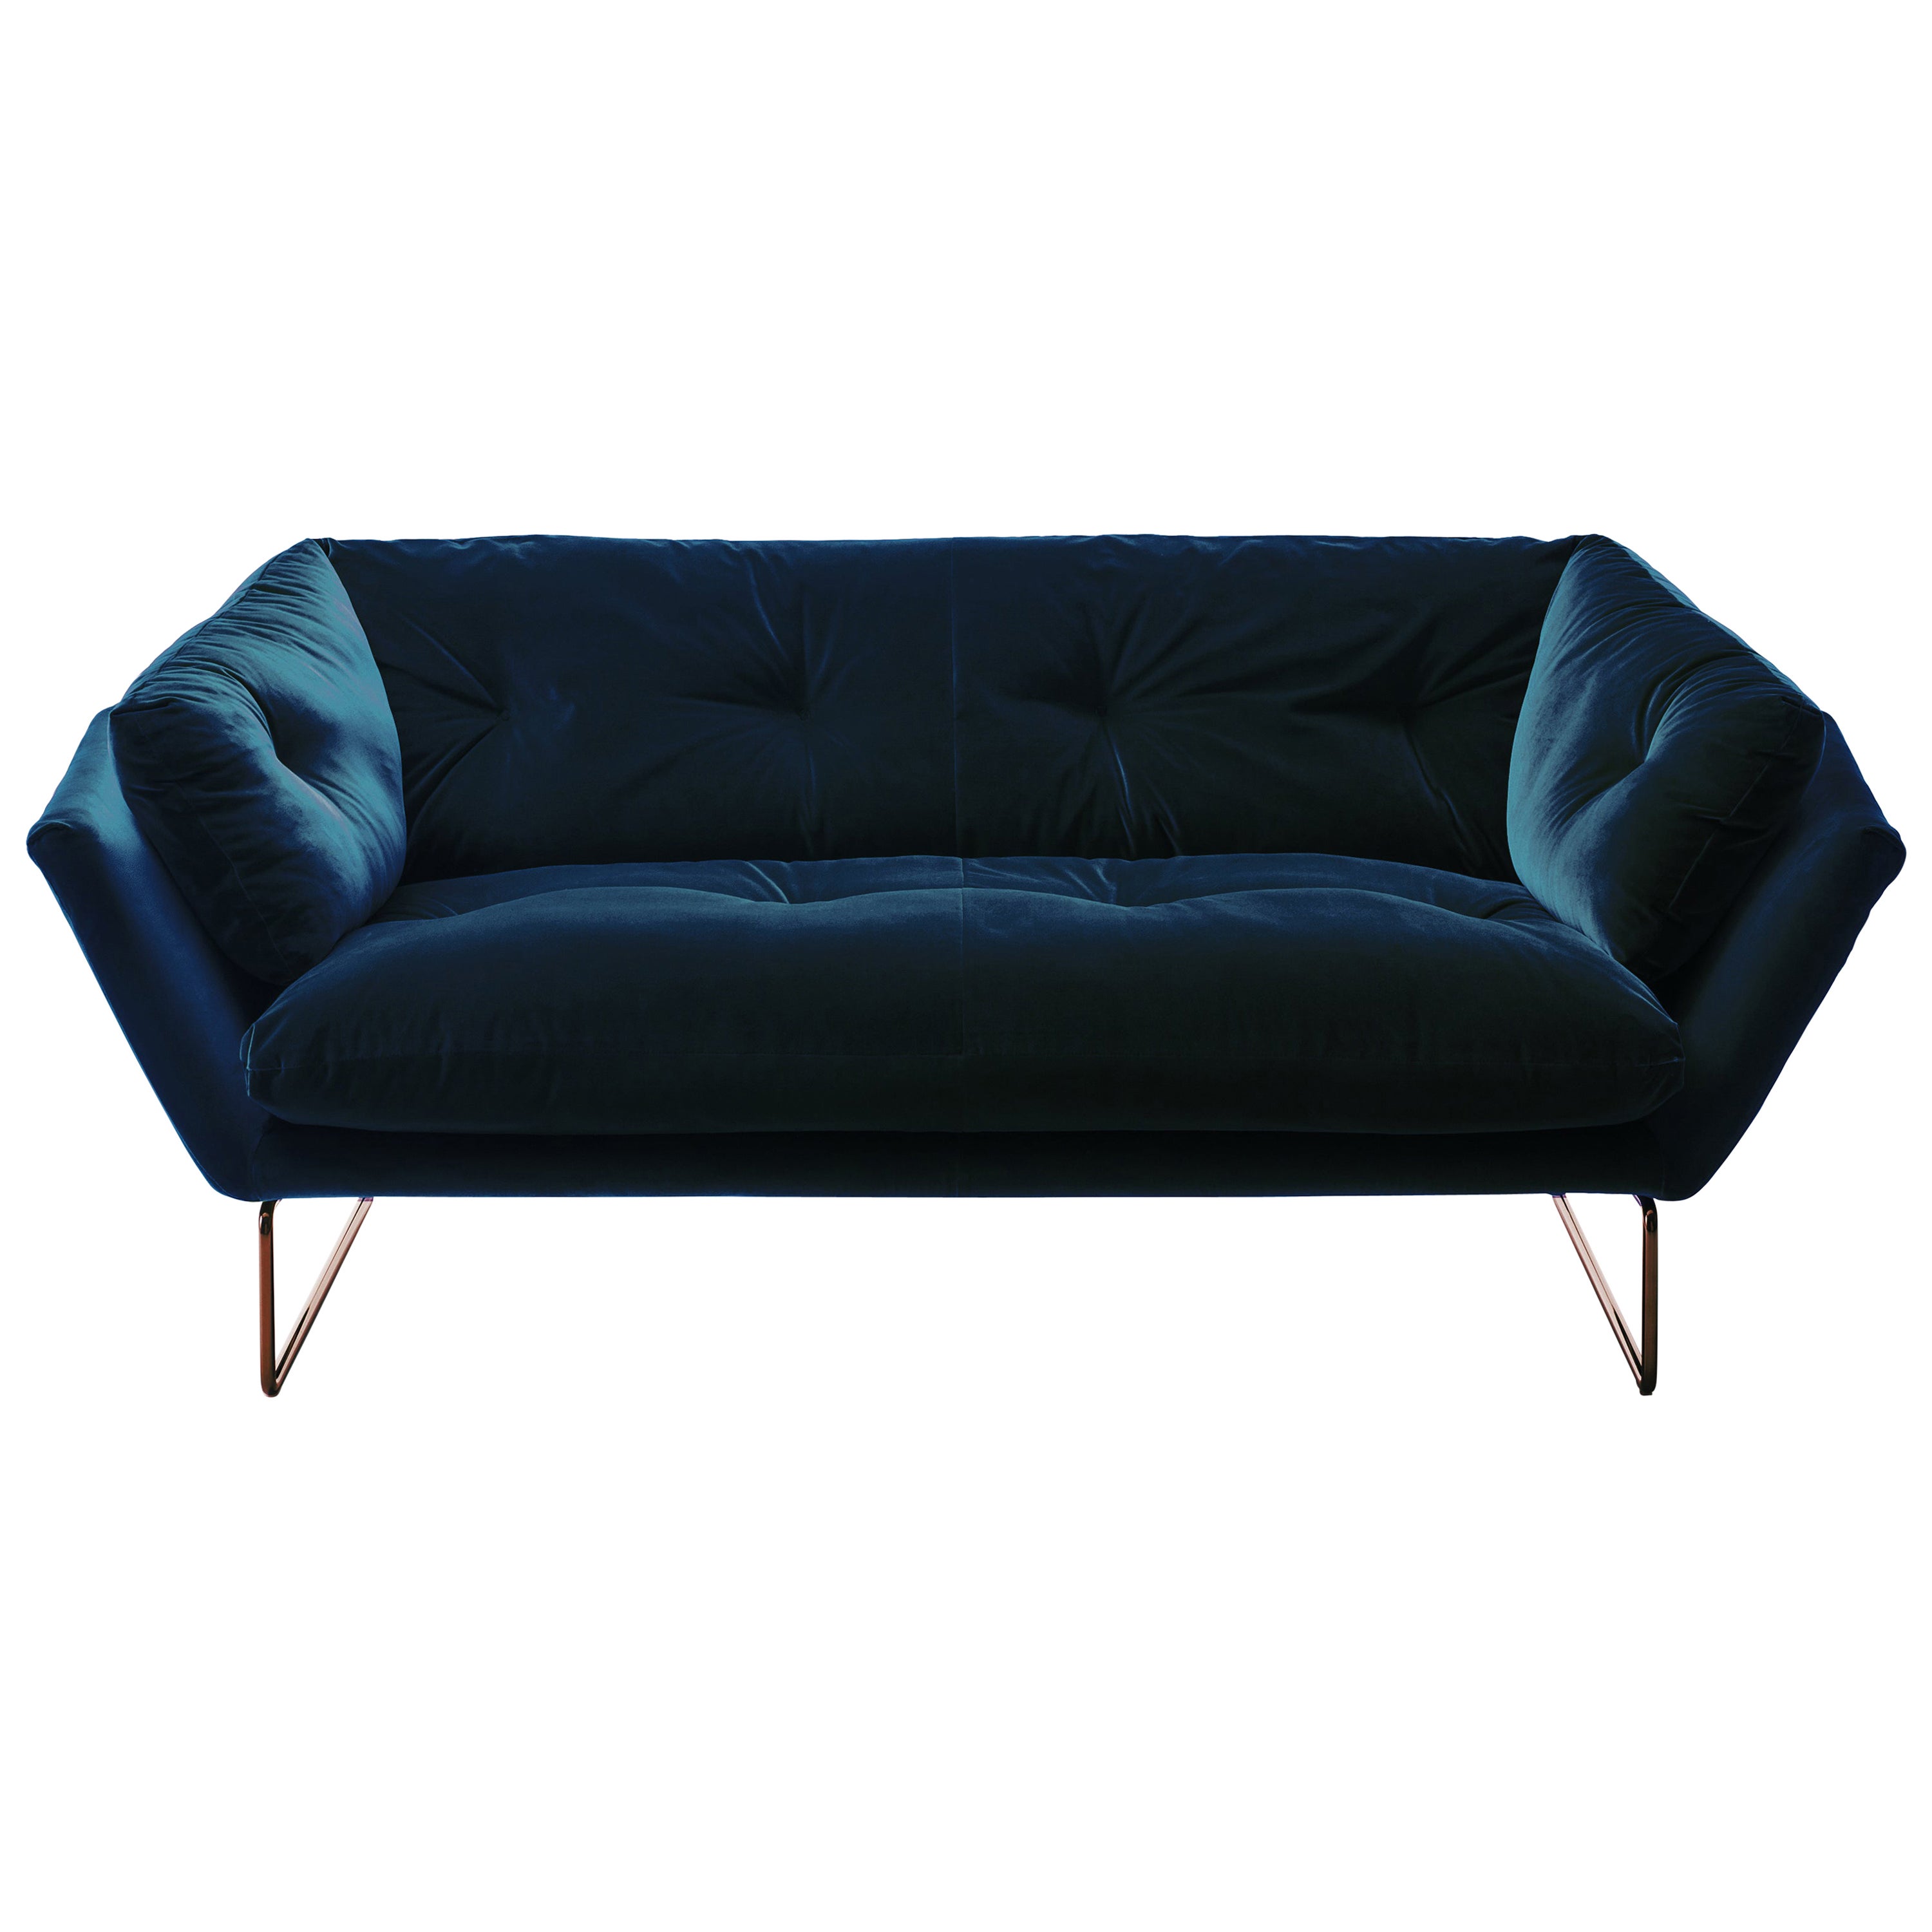 New York Suite Medium Sofa in Sweet Velvet Blue Upholstery & .Bronze Copper Legs